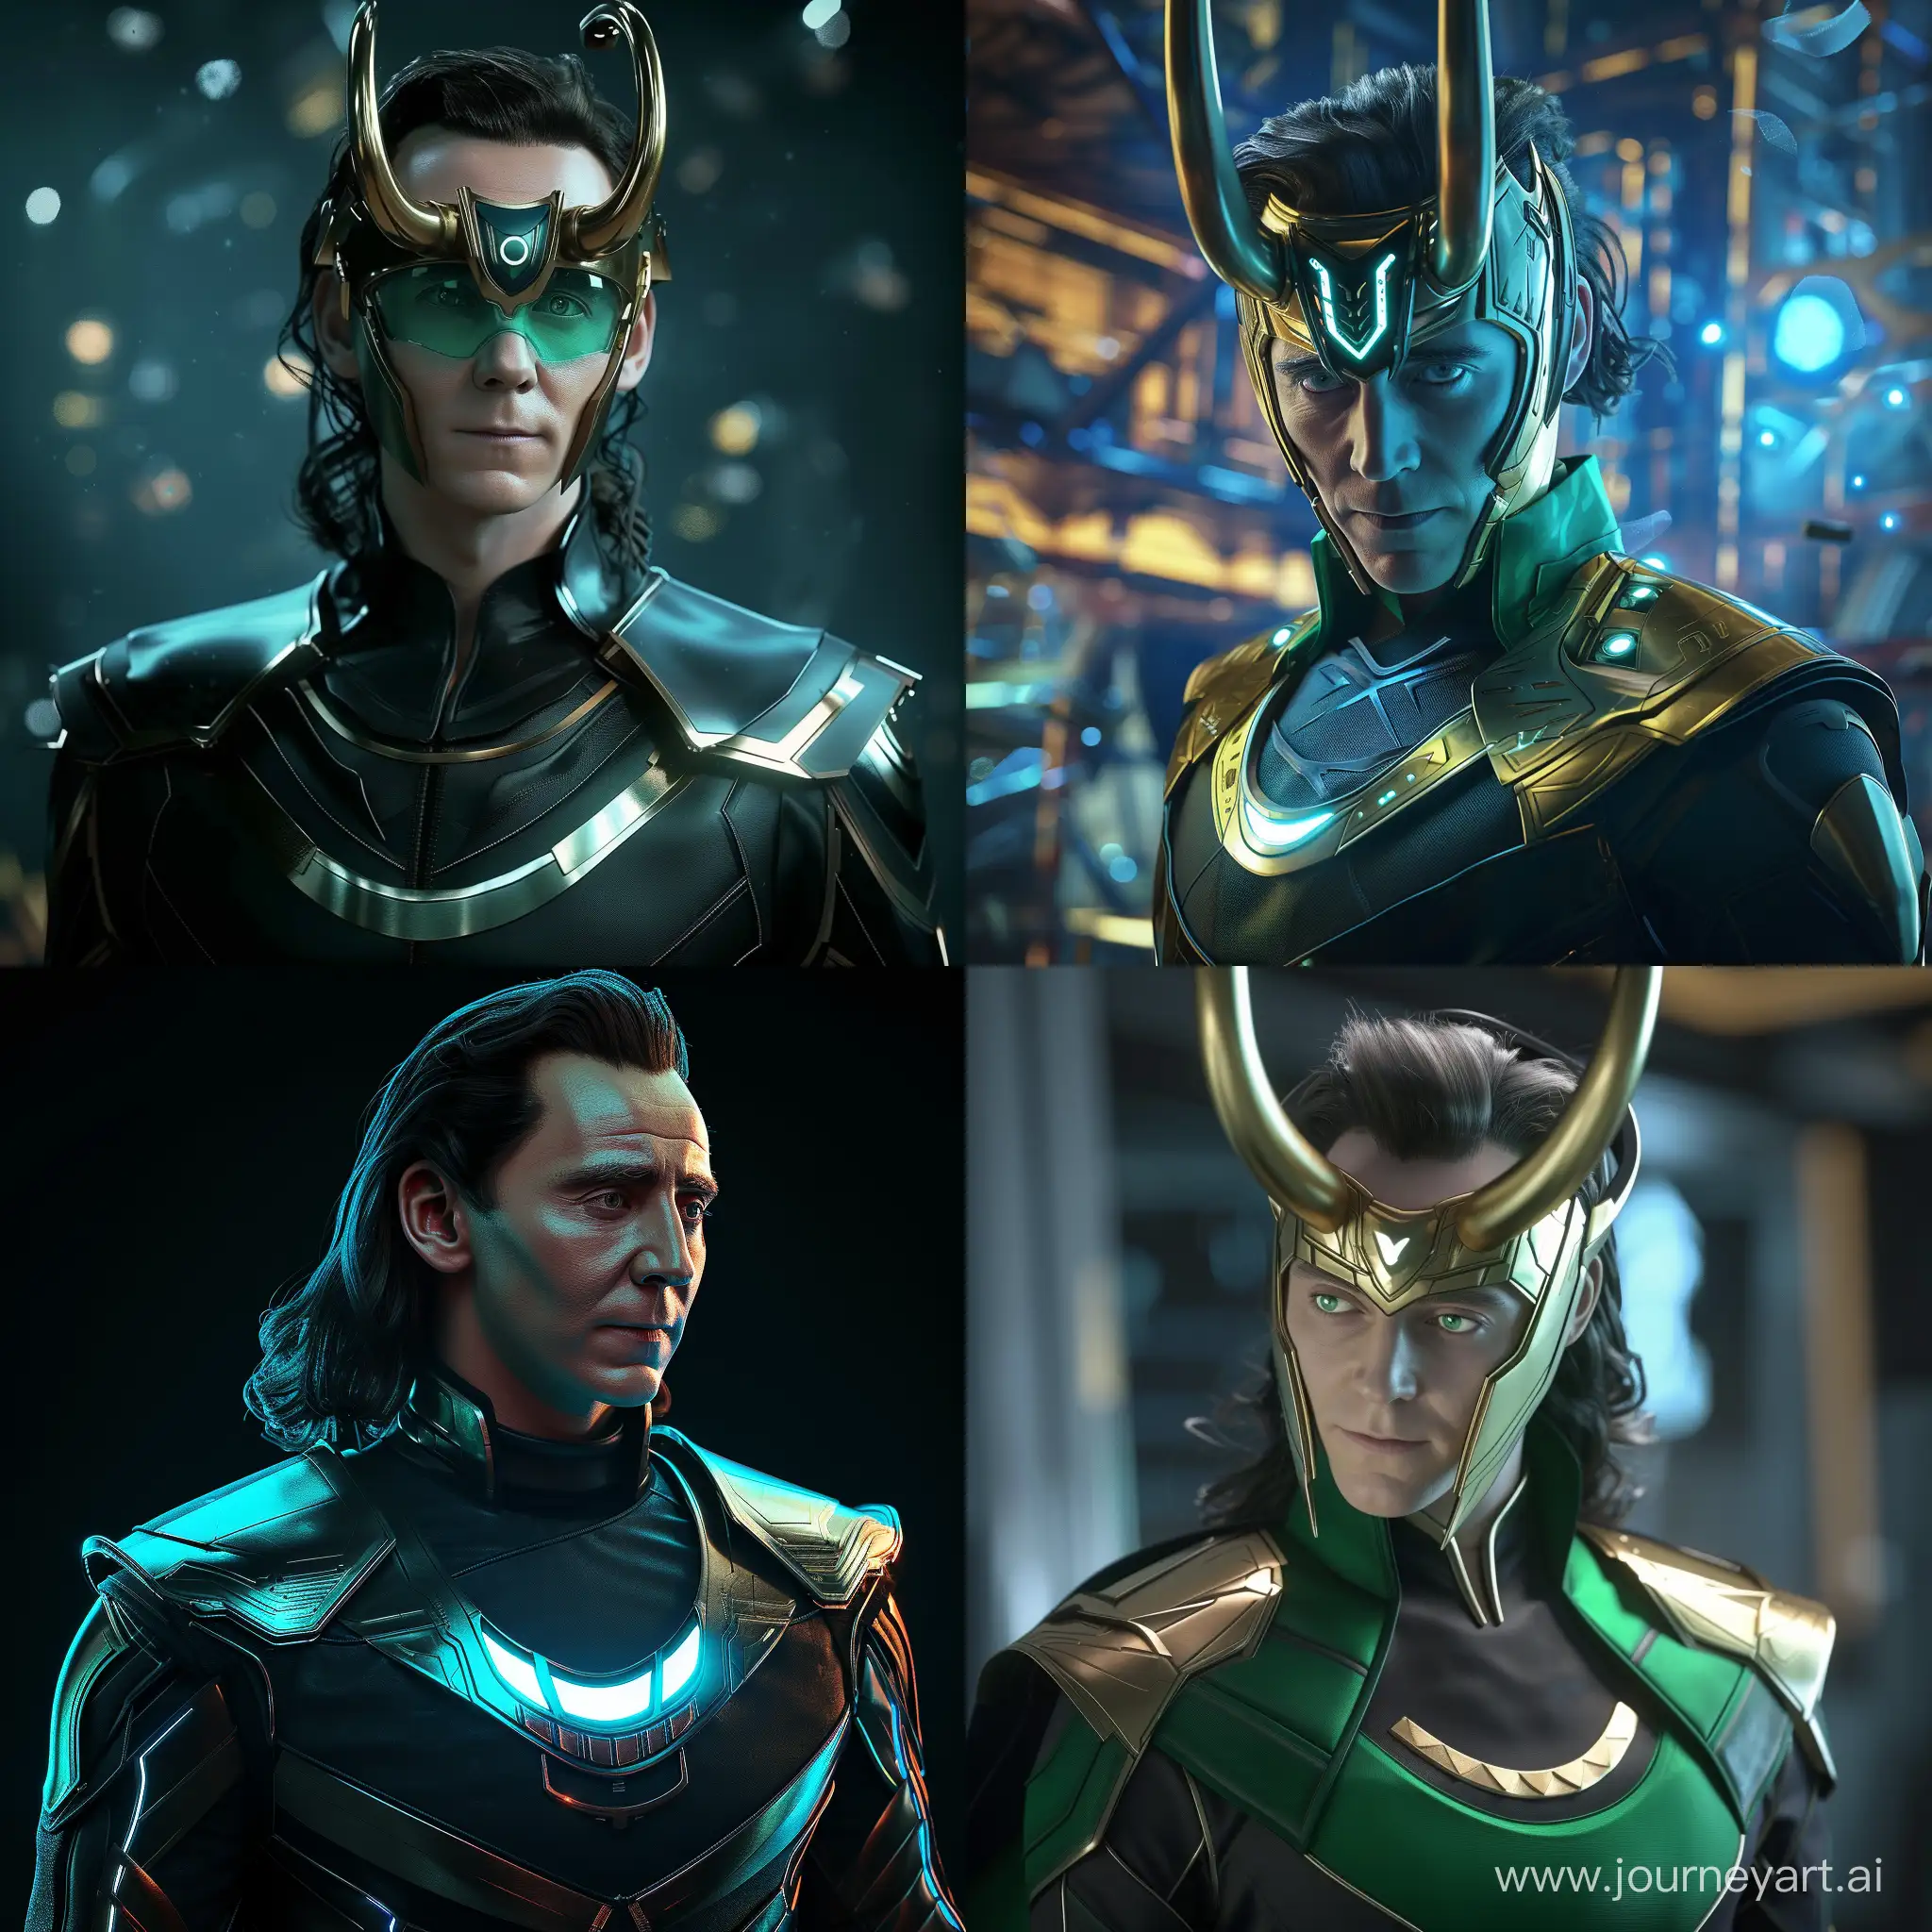 Futuristic-Marvel-Loki-in-HighTech-World